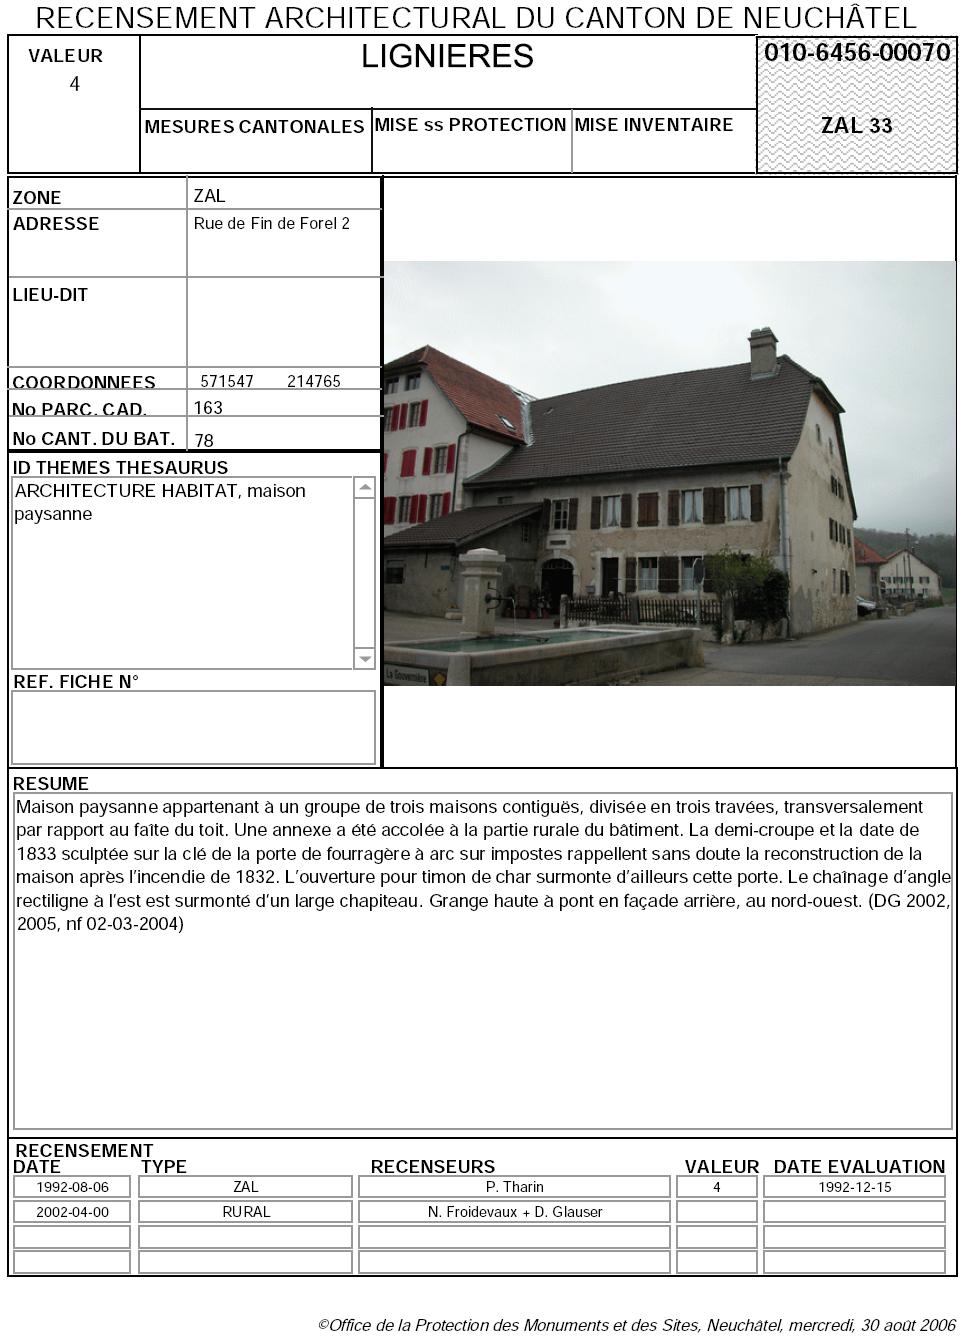 Recensement architectural du canton de Neuchâtel: Fiche 010-6456-00070